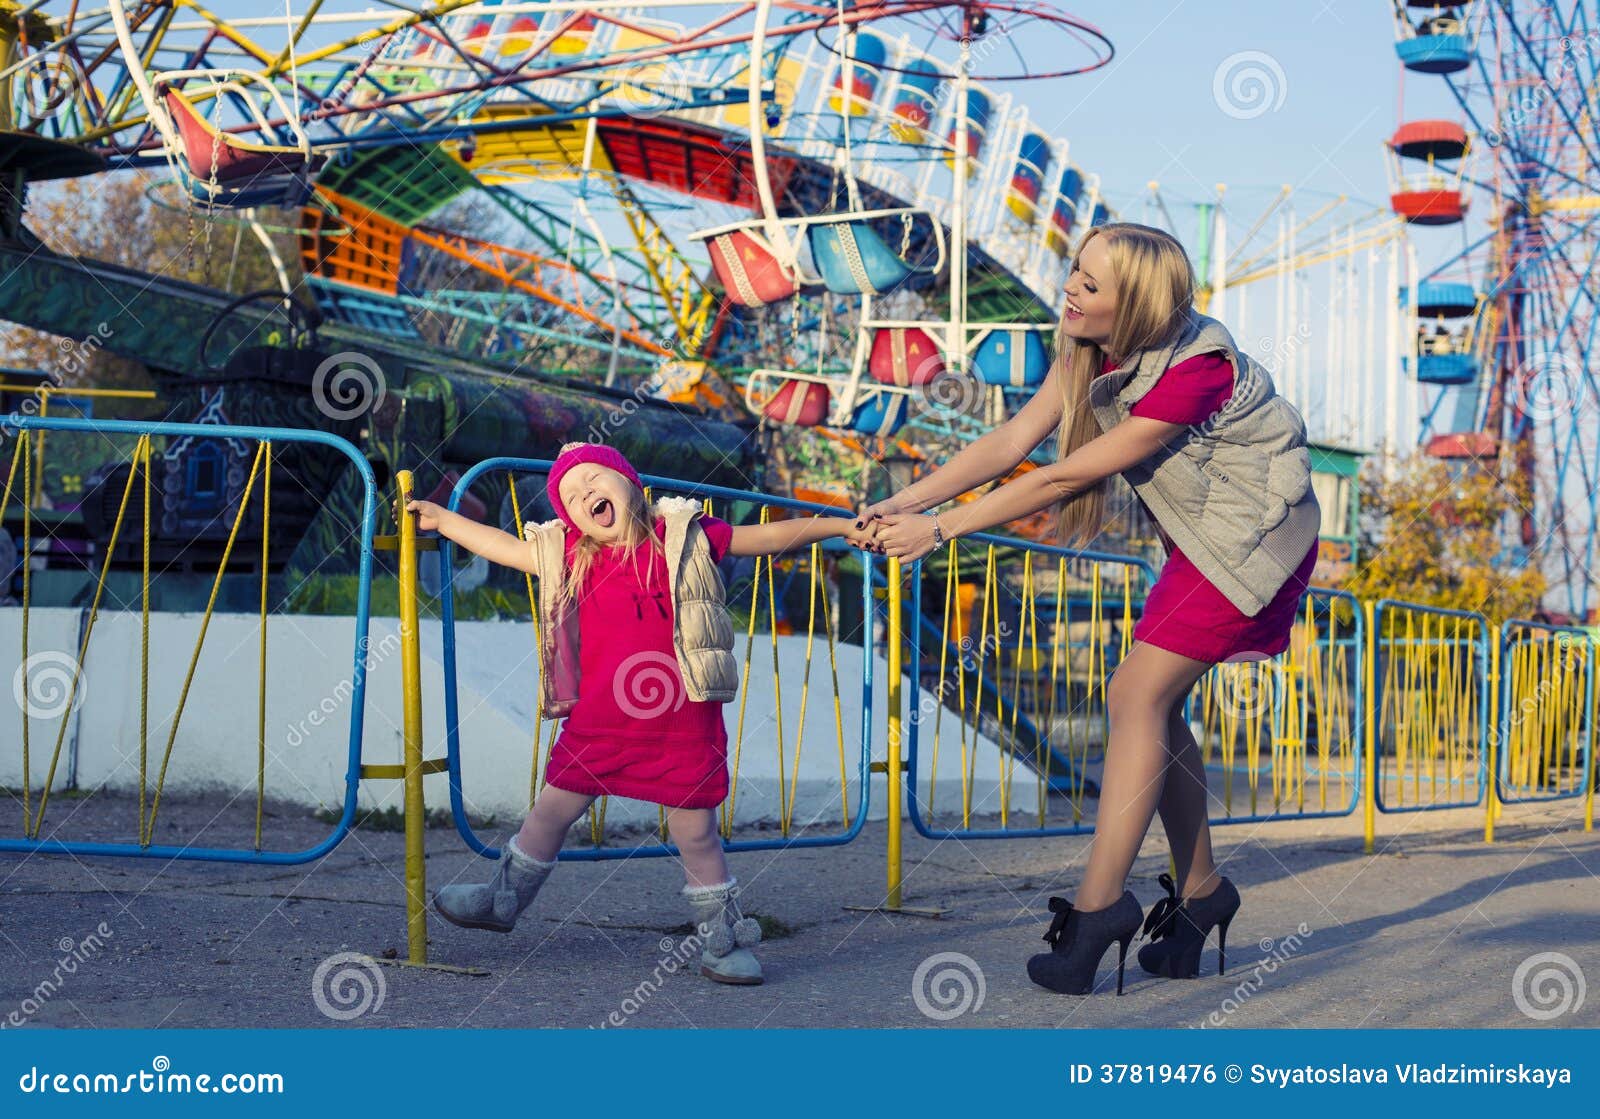 Девочка развлекает. Женщина с детьми в парке развлечений. Маленькая девочка развлекается в парке. Развлечение с мамой. Две подруги на аттракционах.